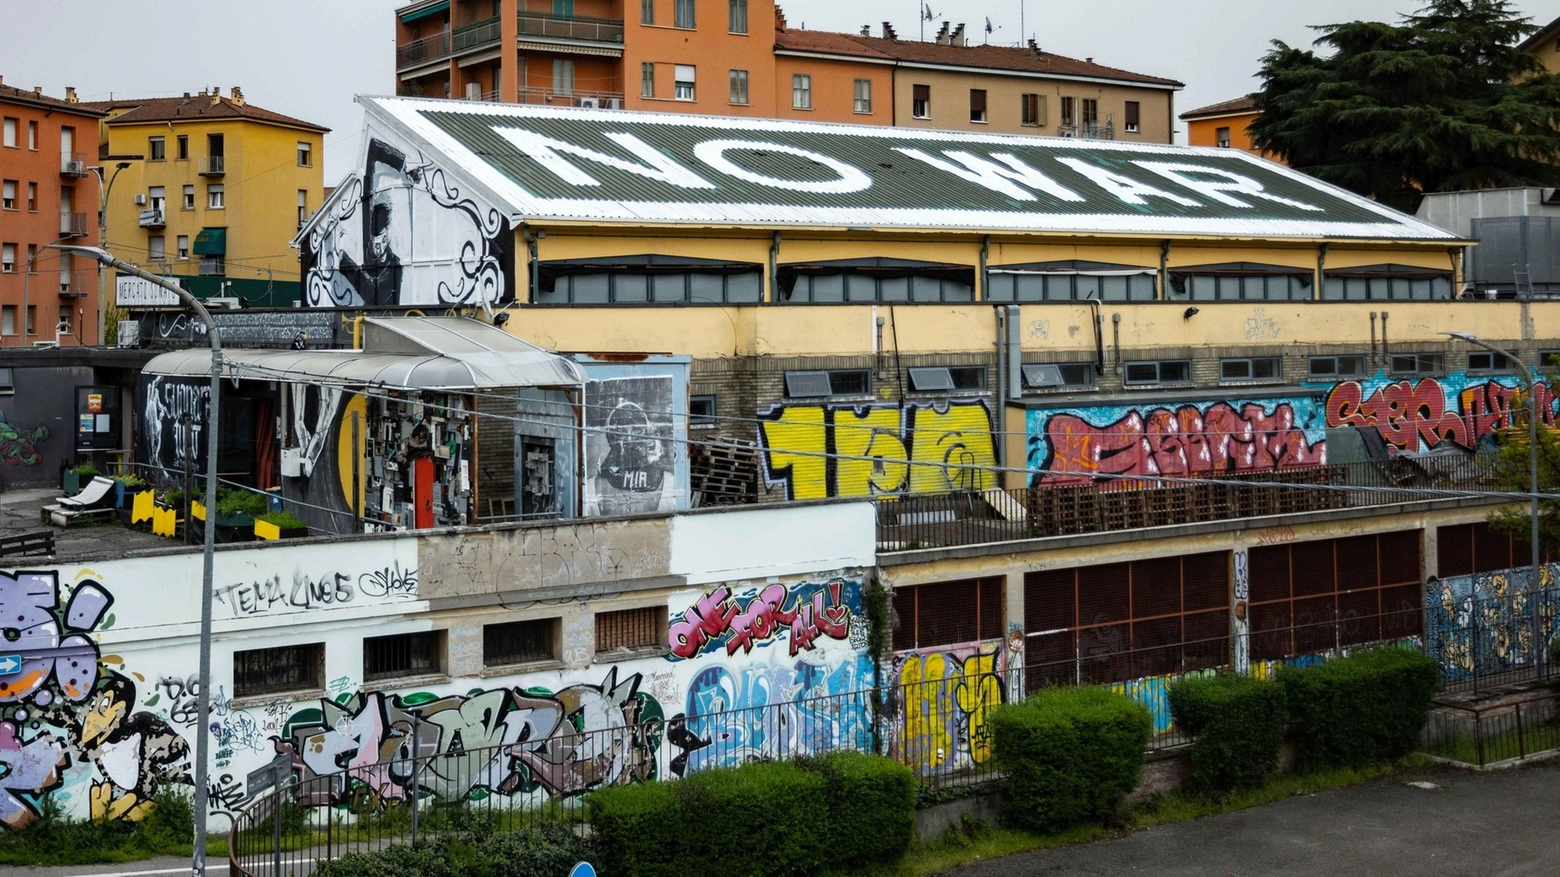 La scritta sul tetto del Mercato Sonato: "No War"